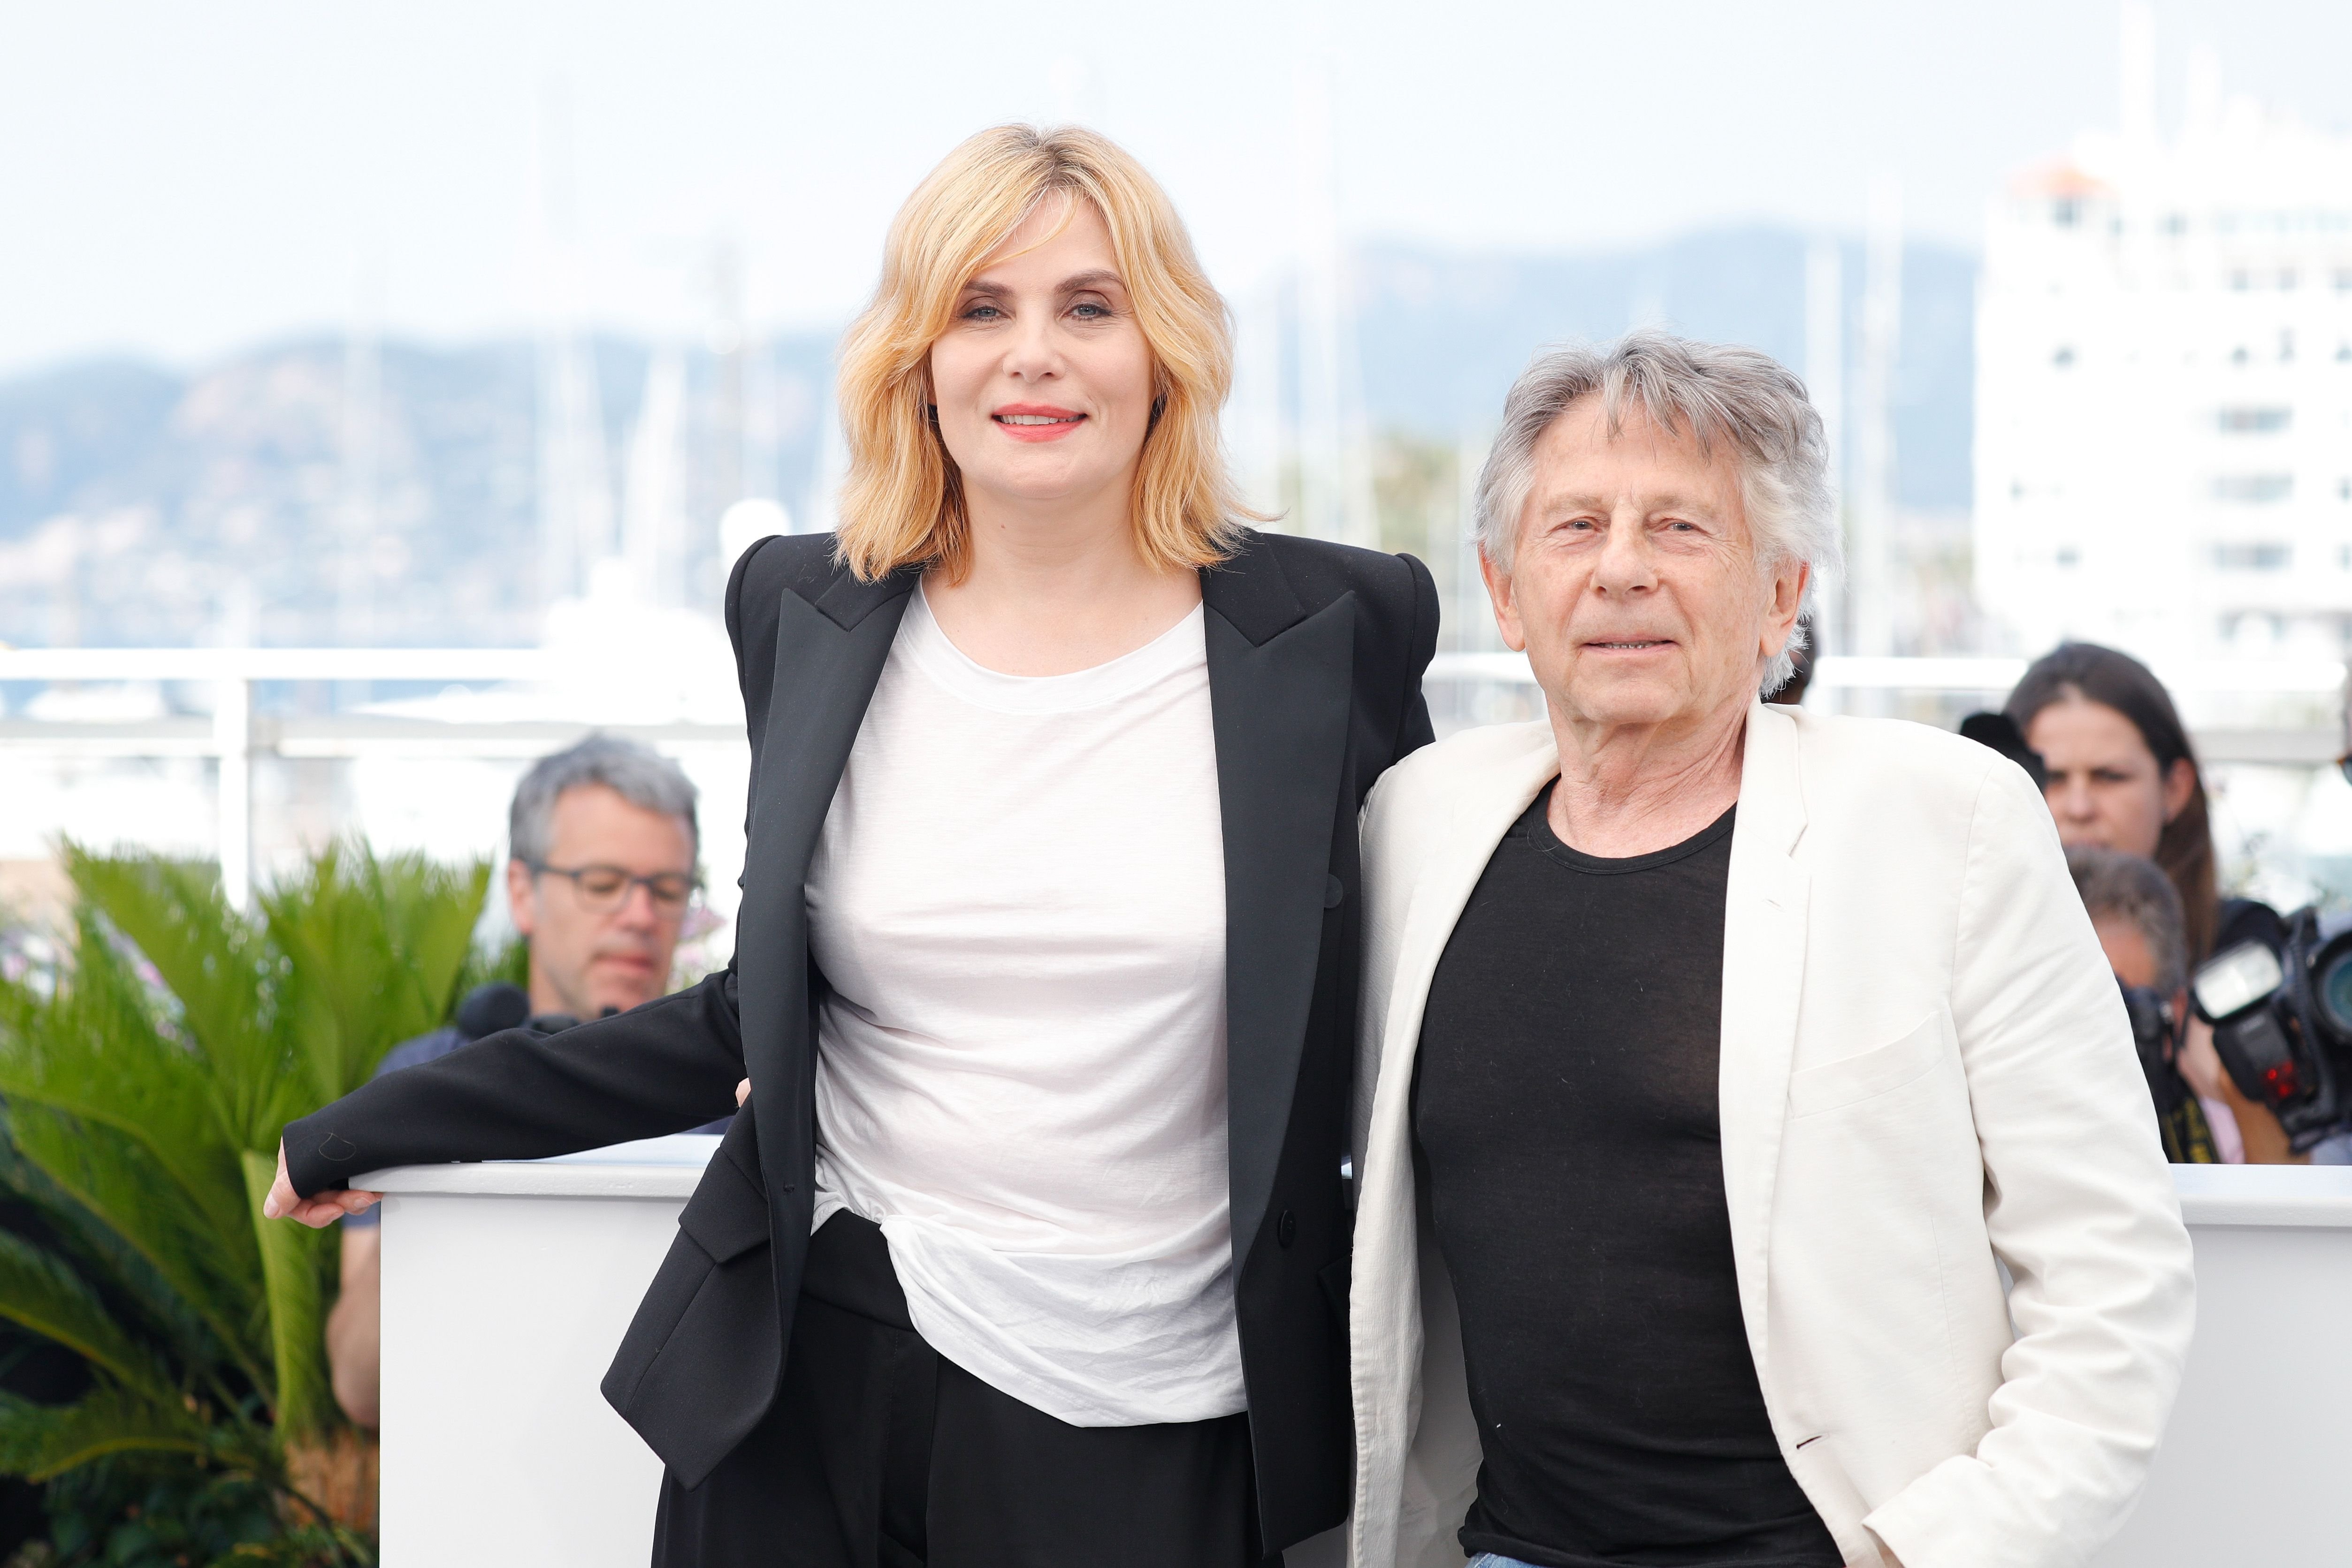 Le réalisateur Roman Polanski et l'actrice Emmanuelle Seigner assistent au photocall "Basé sur une histoire vraie" lors de la 70e édition du Festival de Cannes au Palais des Festivals le 27 mai 2017 à Cannes, France. | Photo : Getty Images